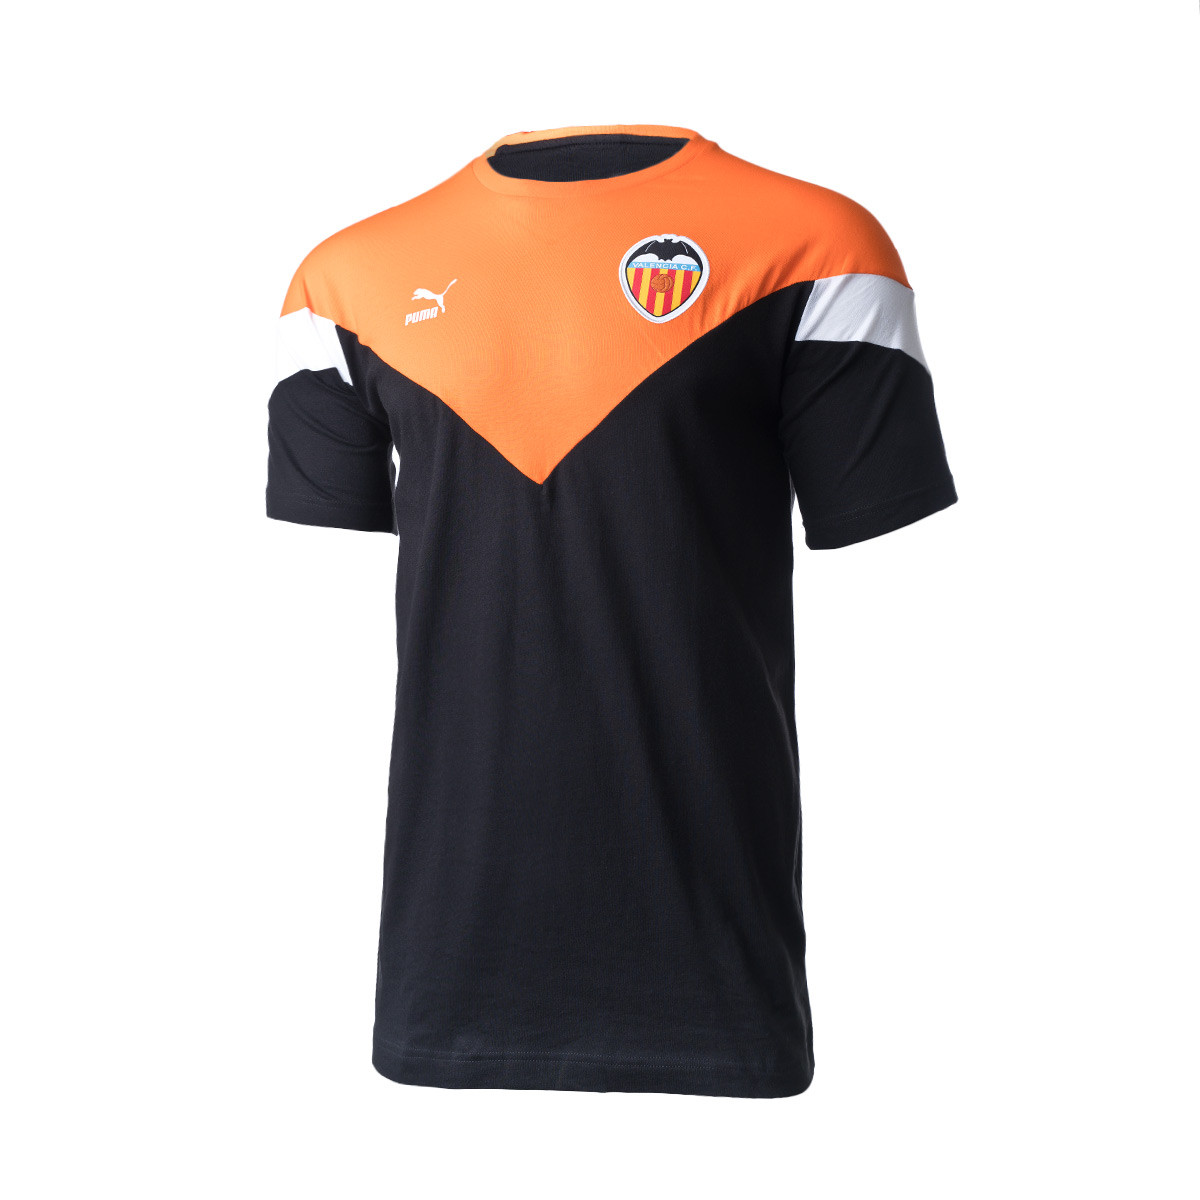 Camiseta Puma Valencia CF Iconic MCS 2019-2020 Puma Black-Vibrant Orange- Puma White - Tienda de fútbol Fútbol Emotion